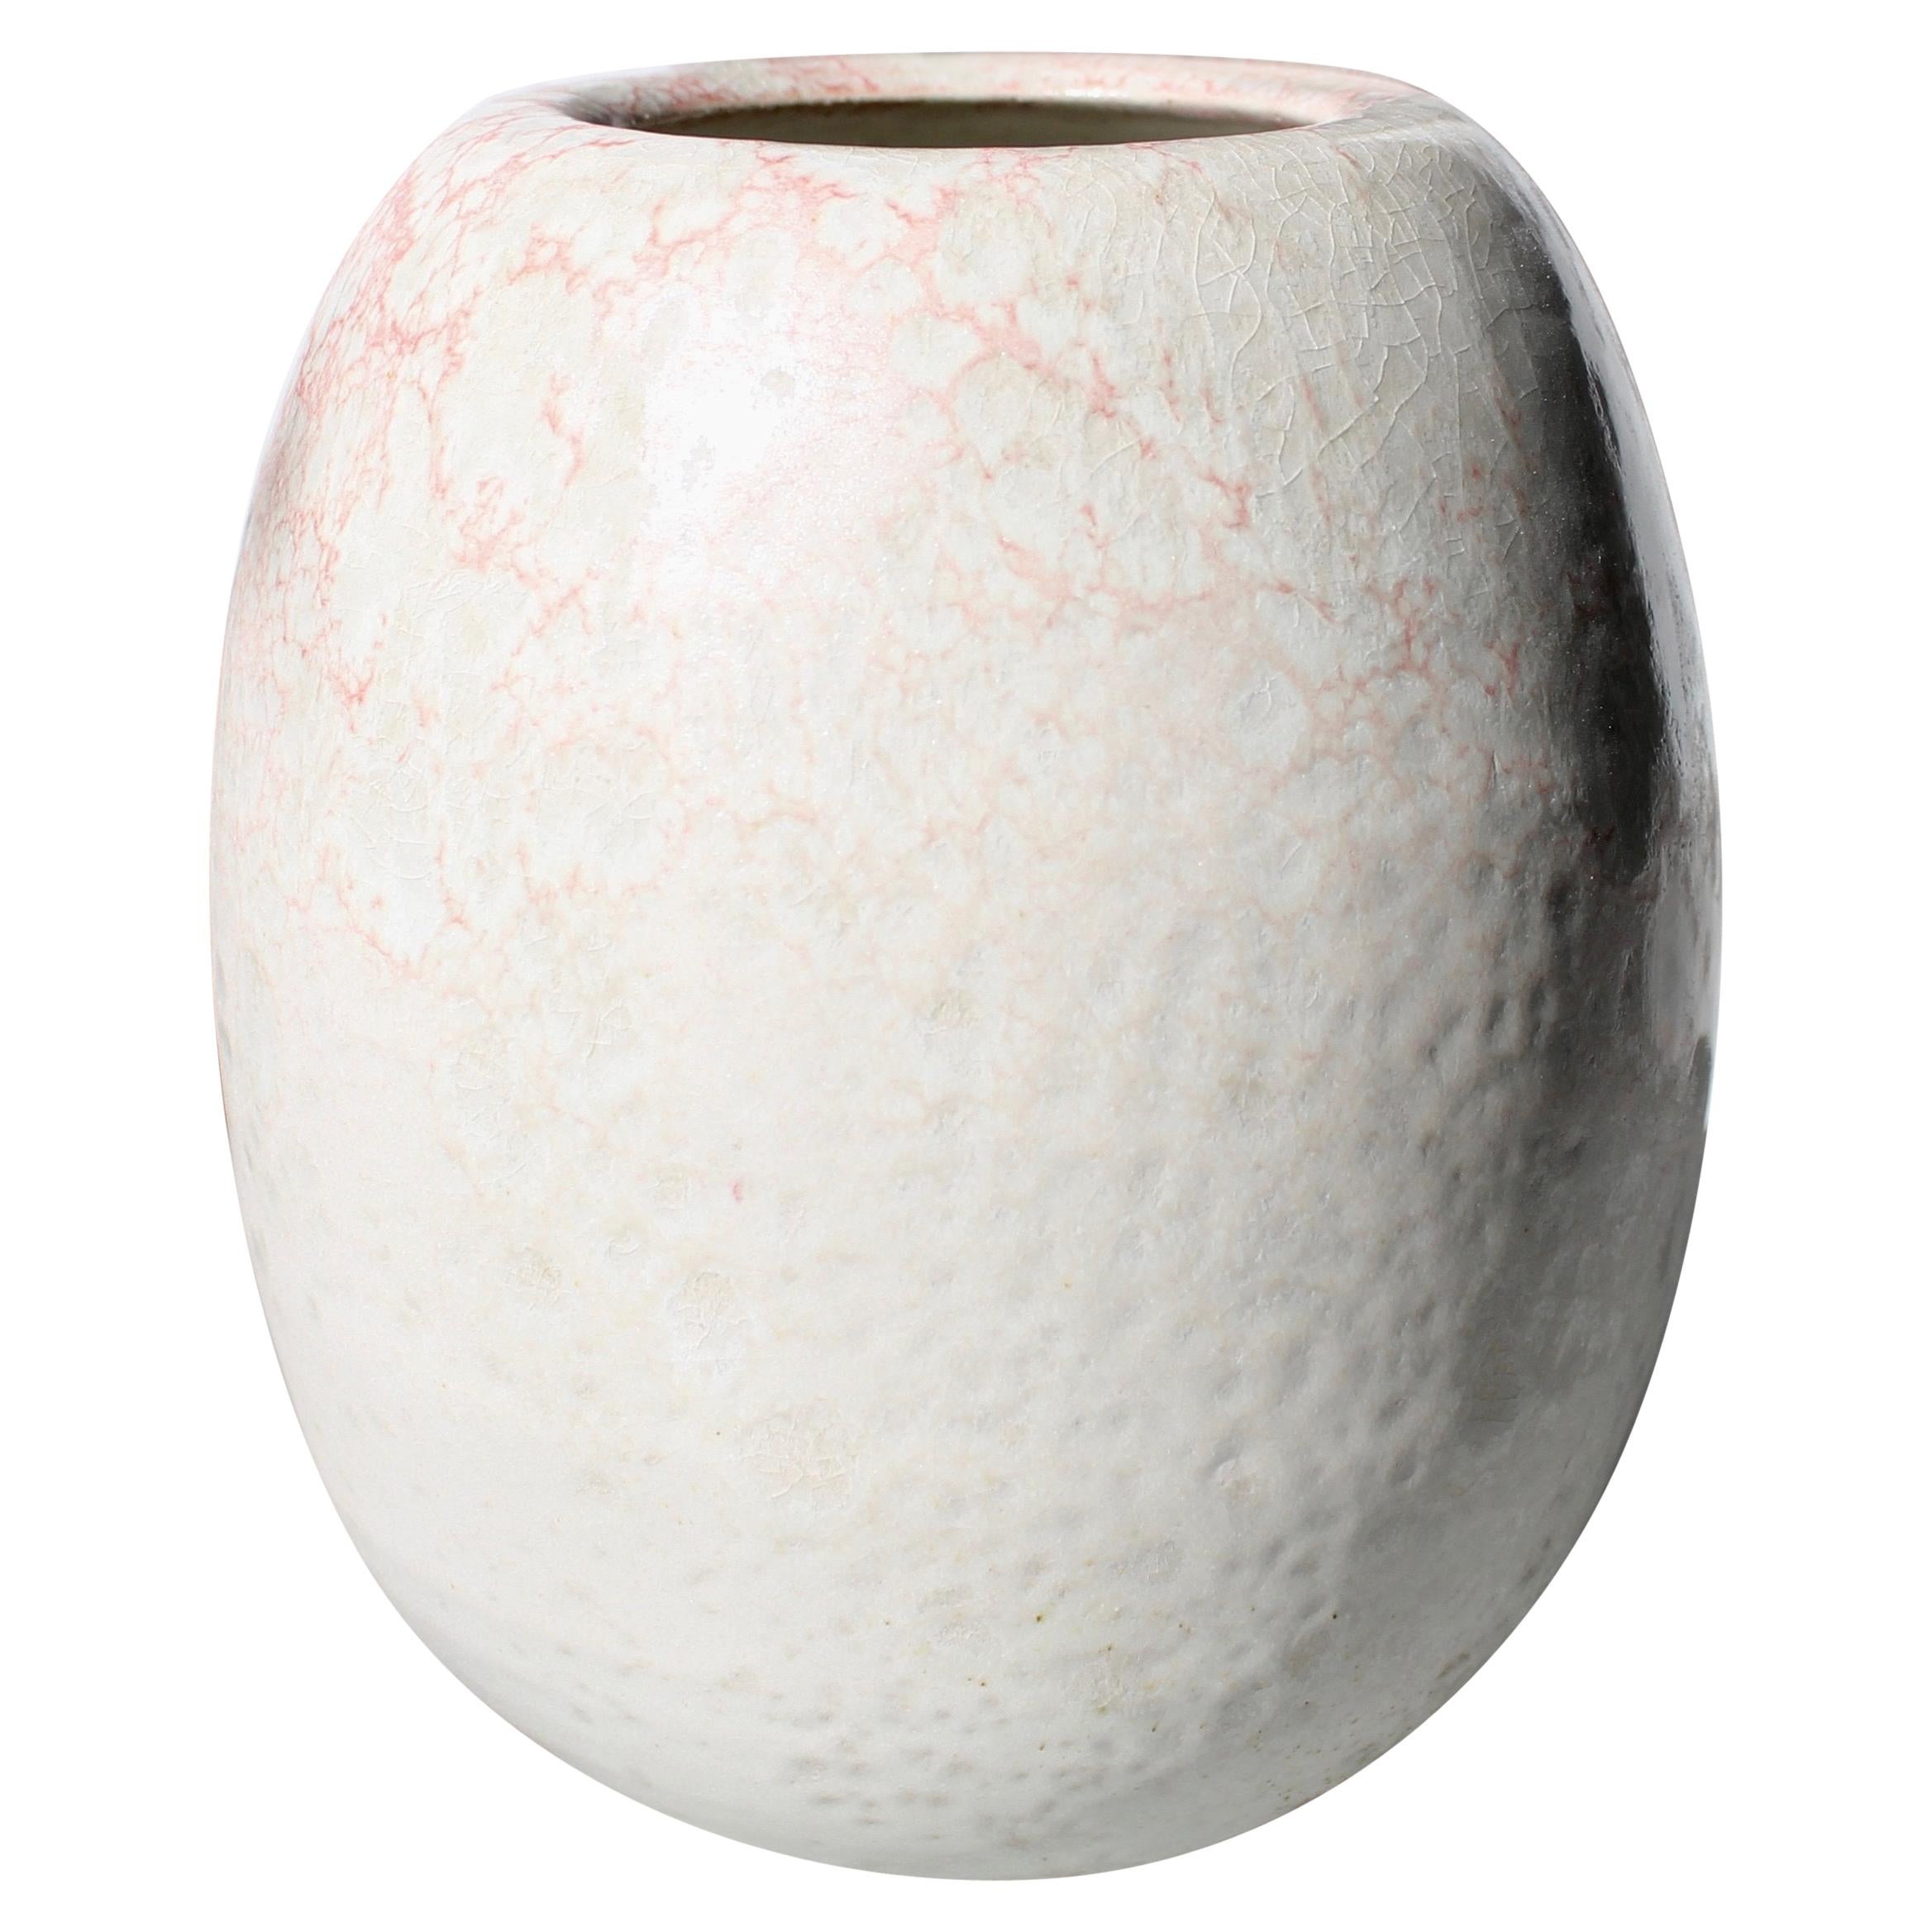 Kh Würtz Round Egg Shaped Vase Blush Glaze